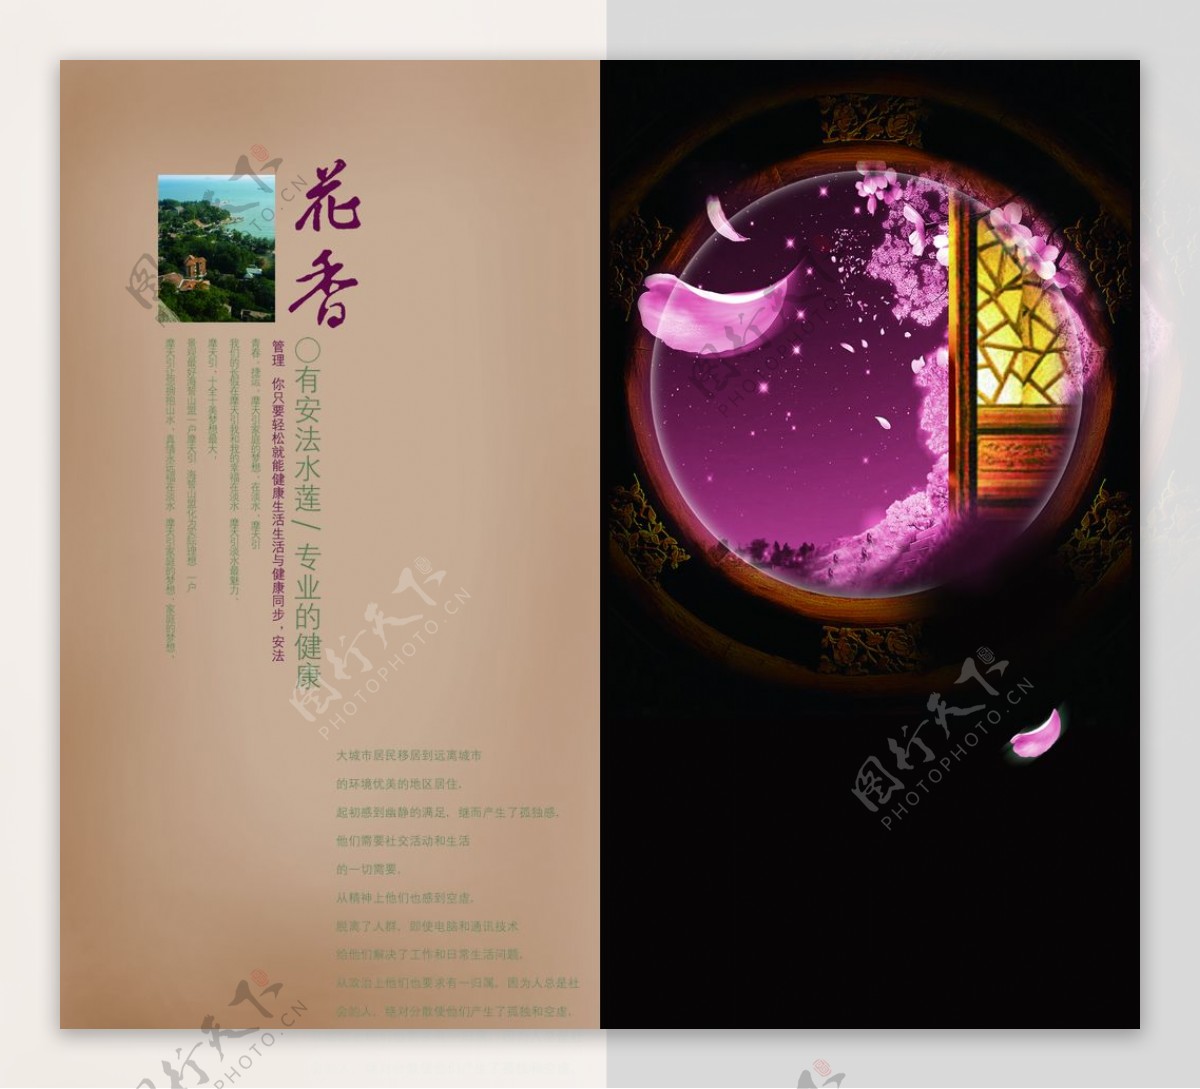 品质生活创意古风中国风宣传画册